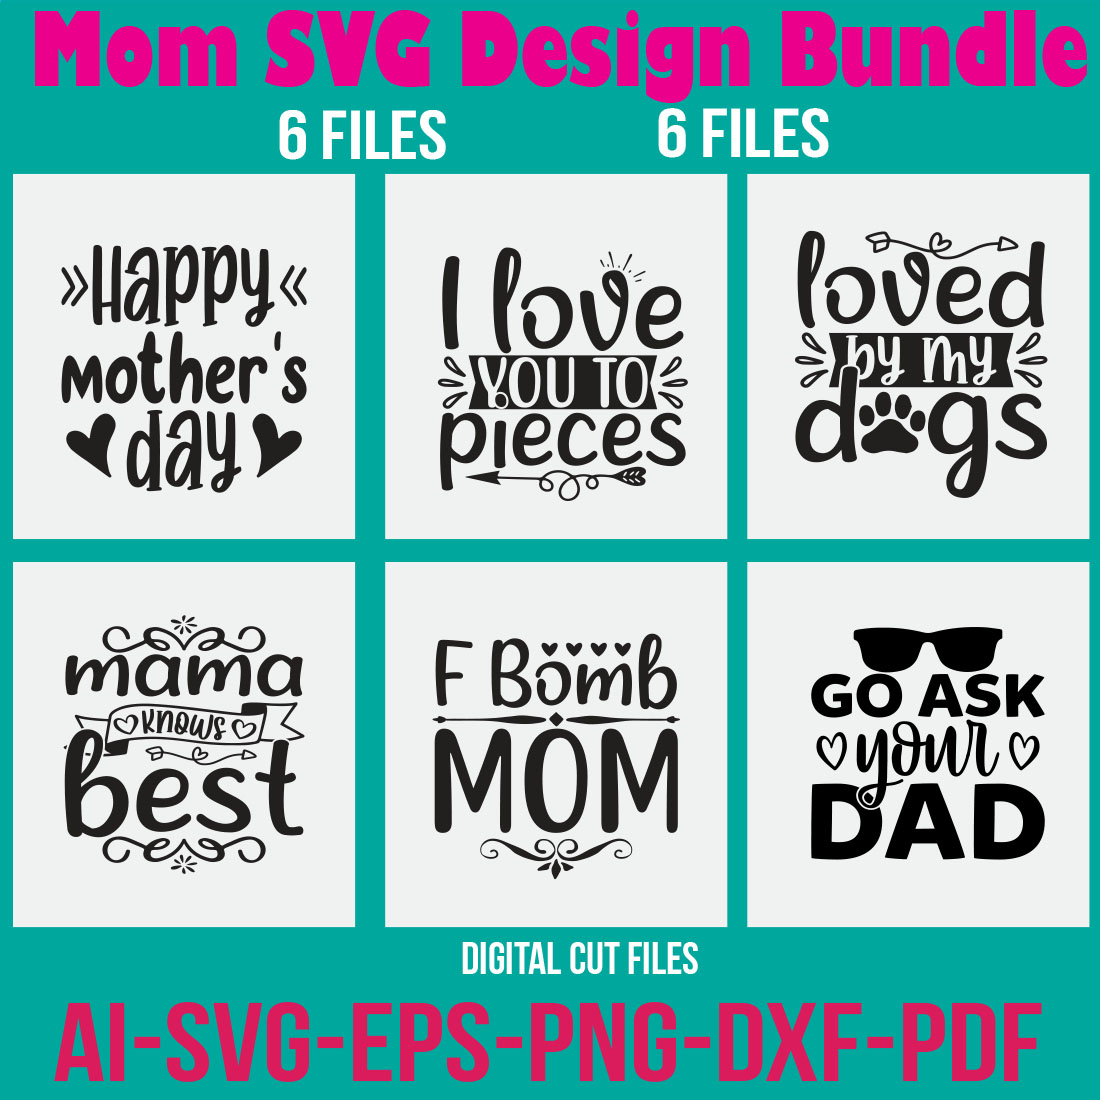 Mom SVG Design Bundle cover image.